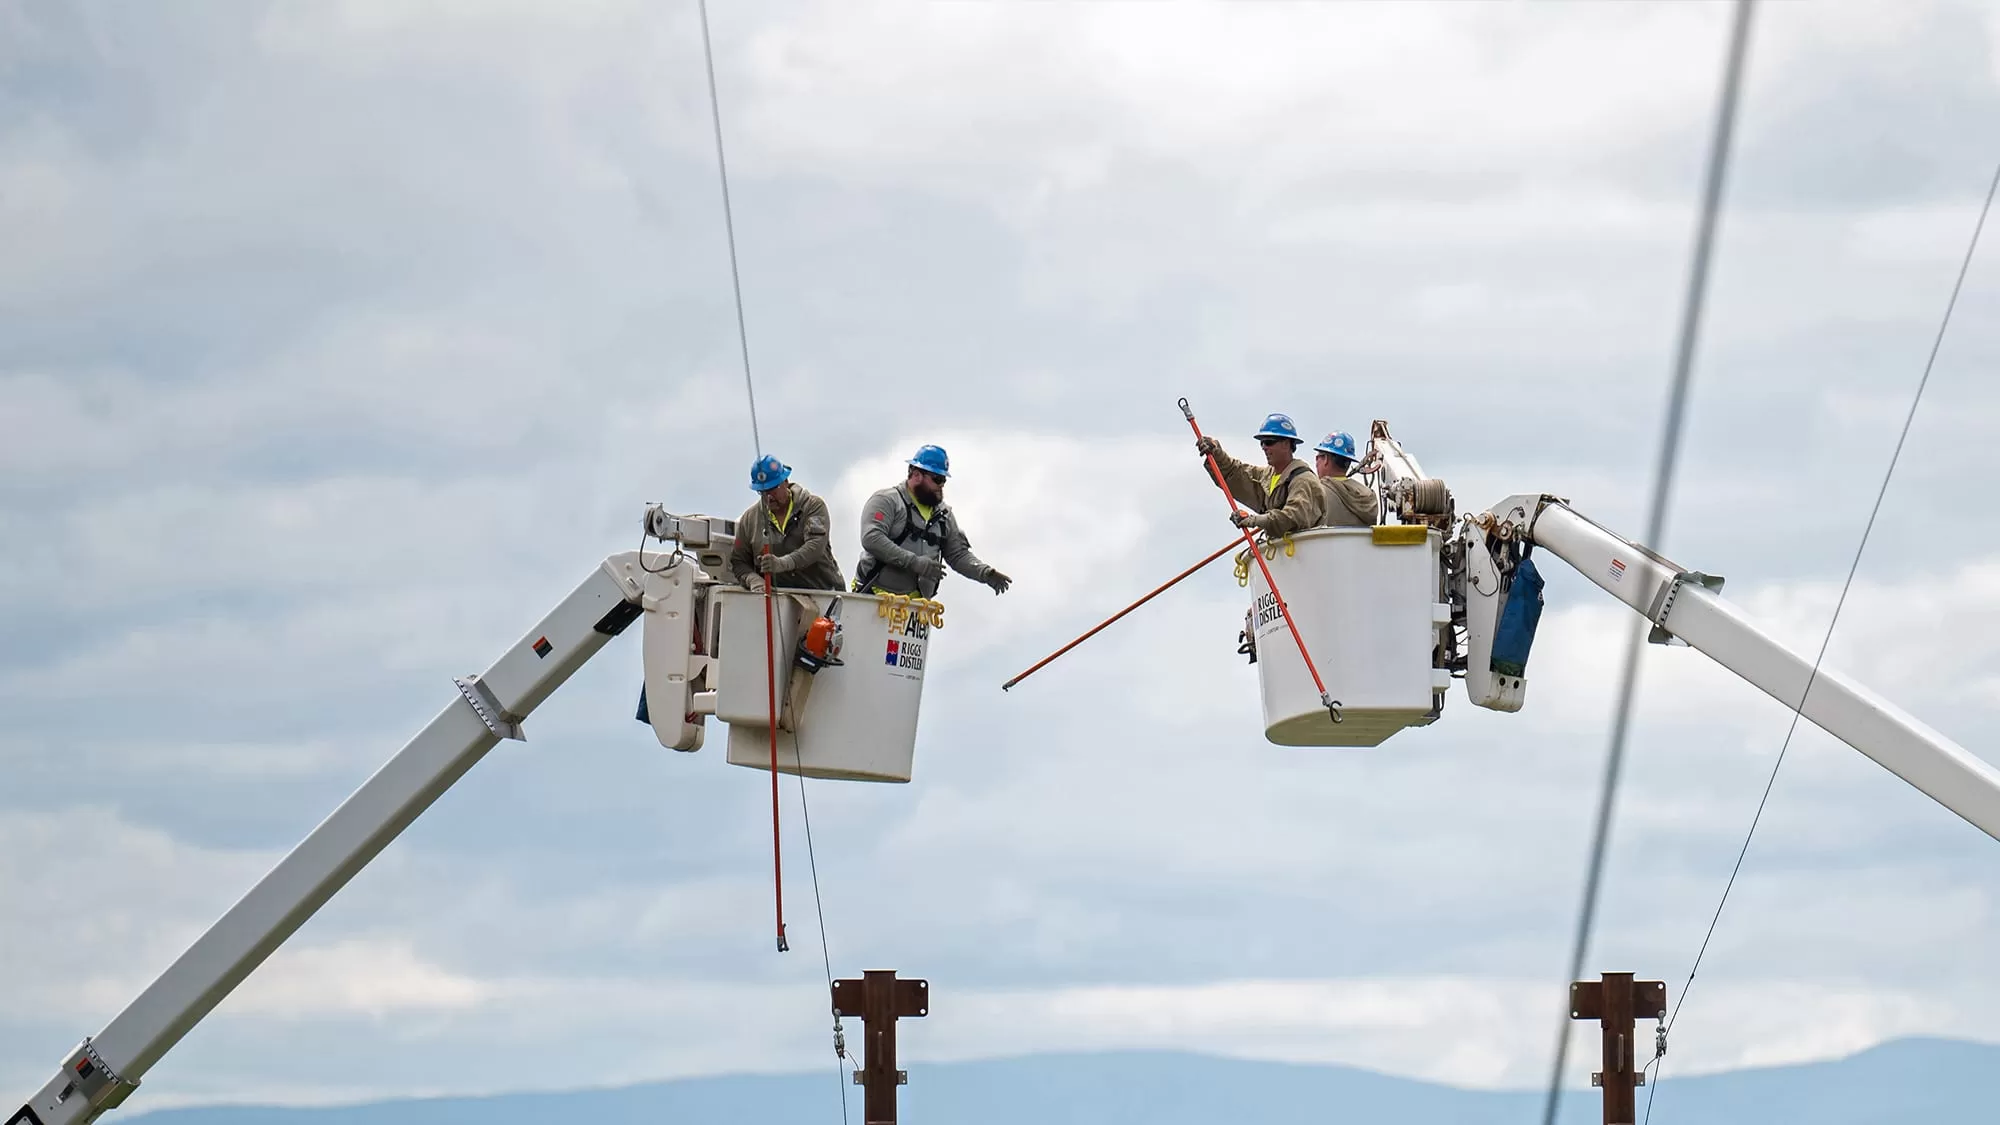 workers in cranes fixing power lines